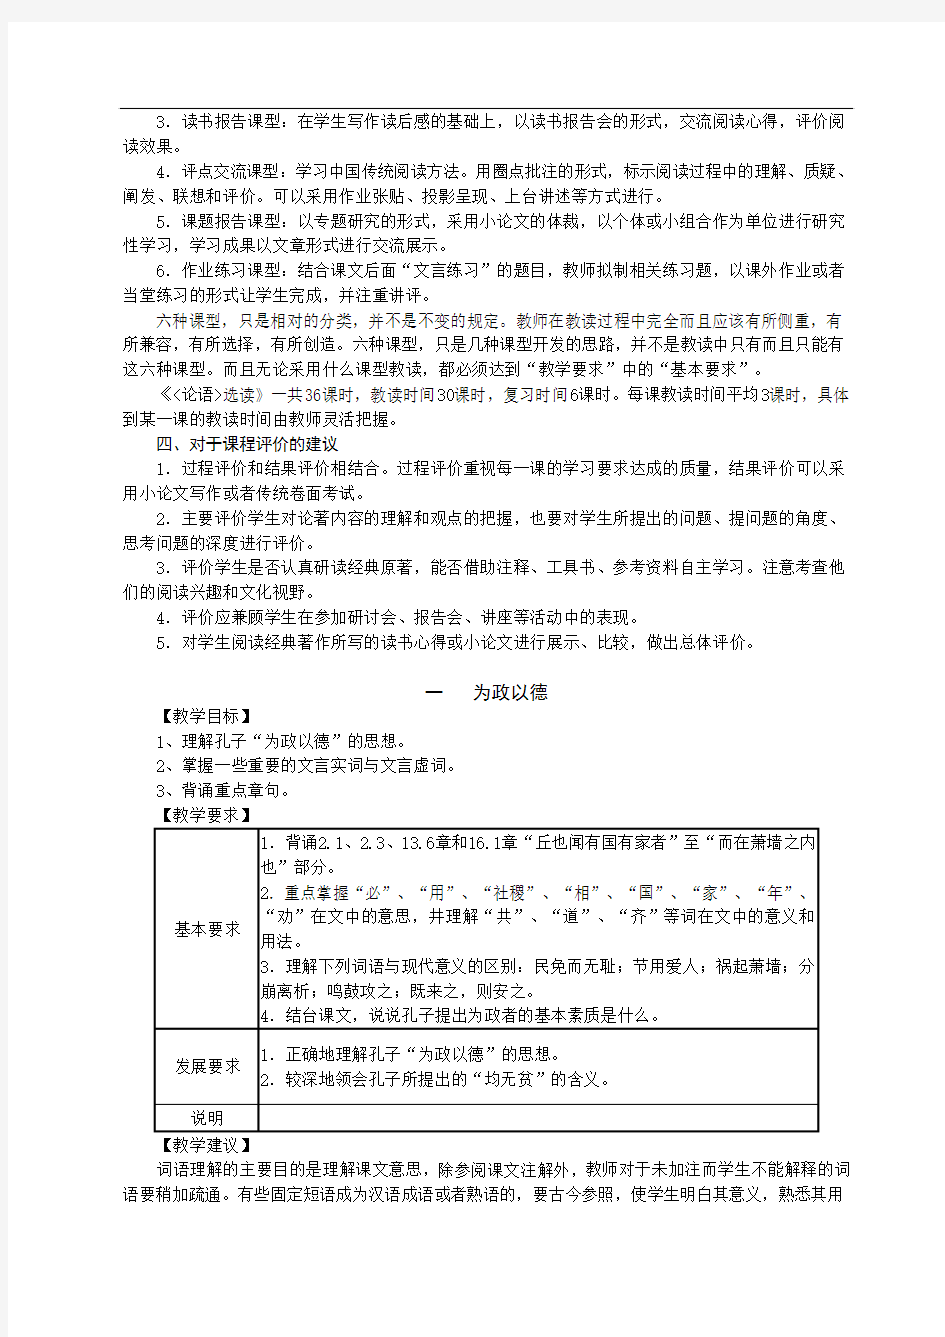 浙江省普通高中新课程实验语文学科教学指导意见之《〈论语〉选读》